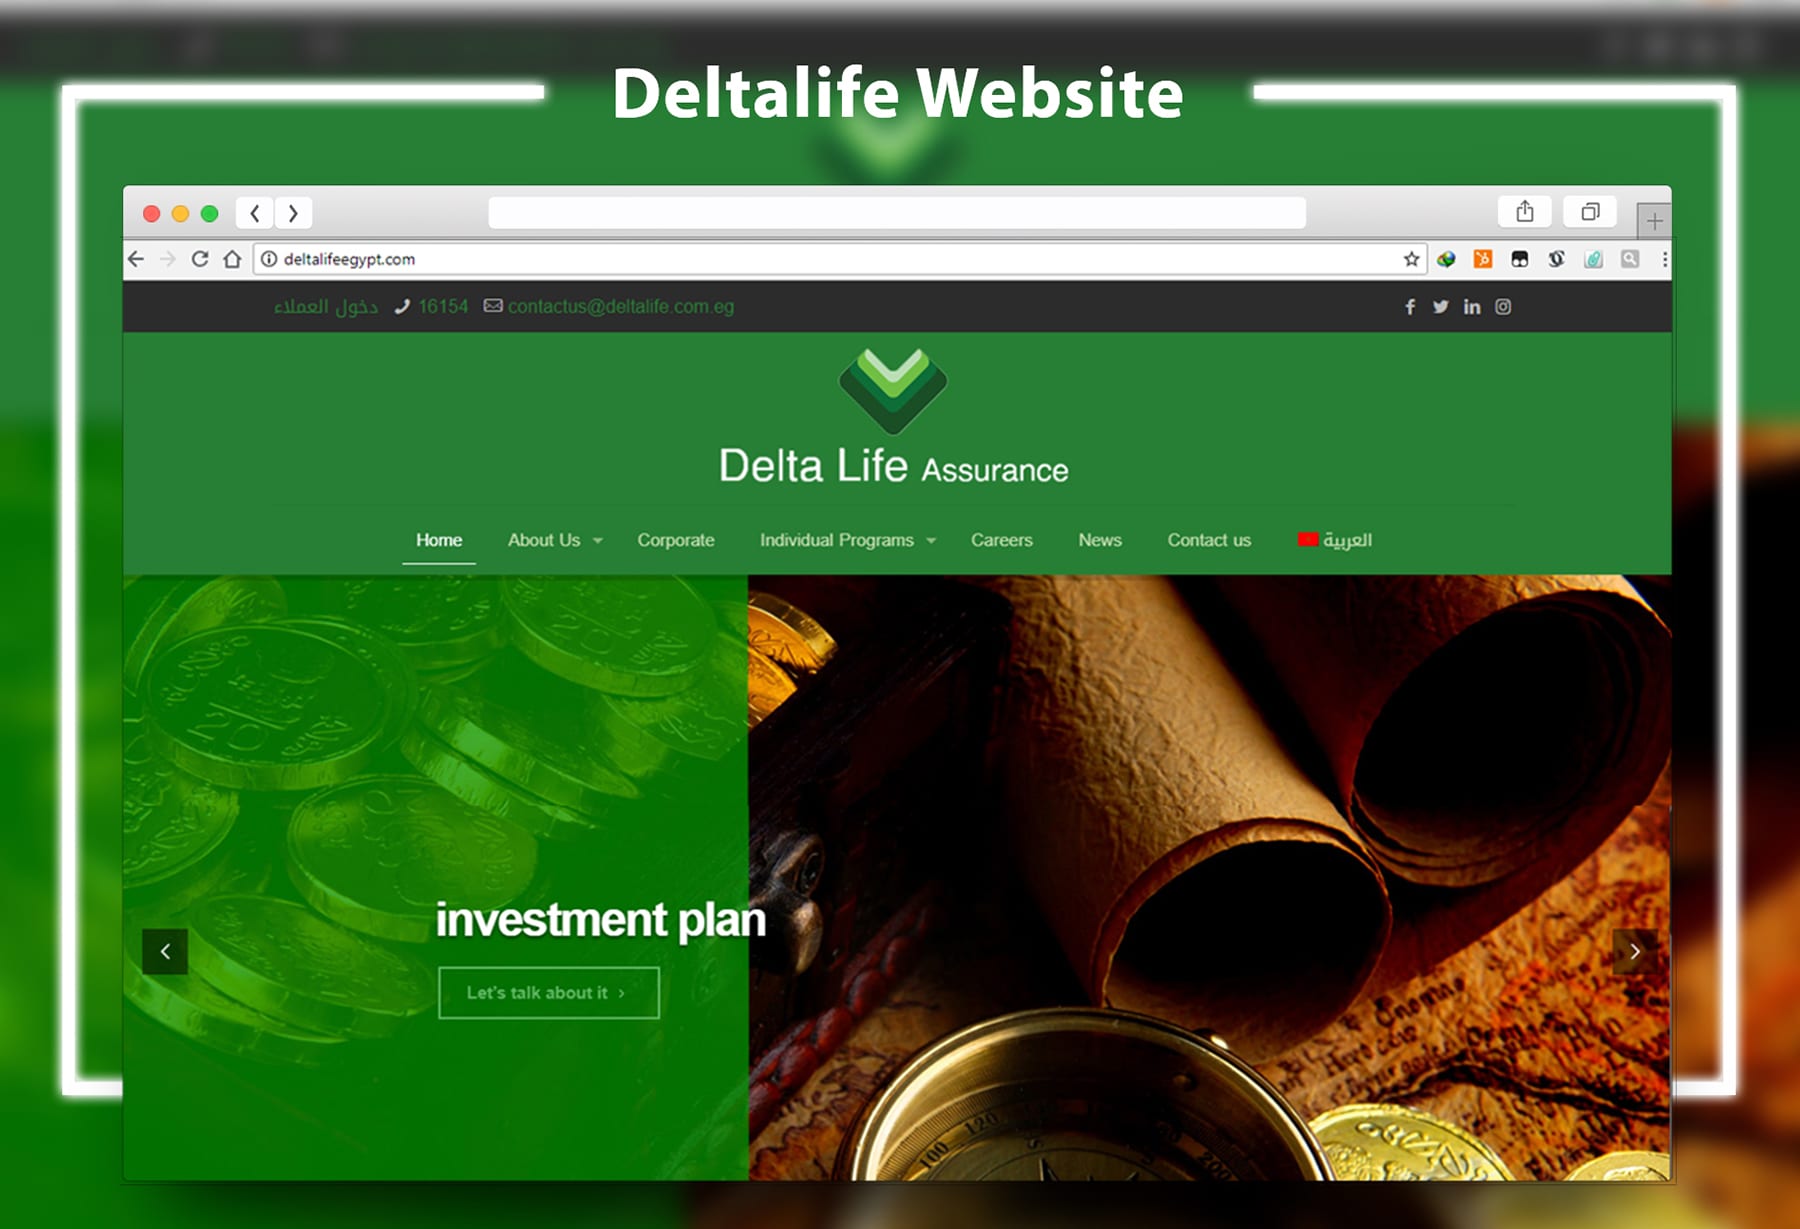 deltalife website